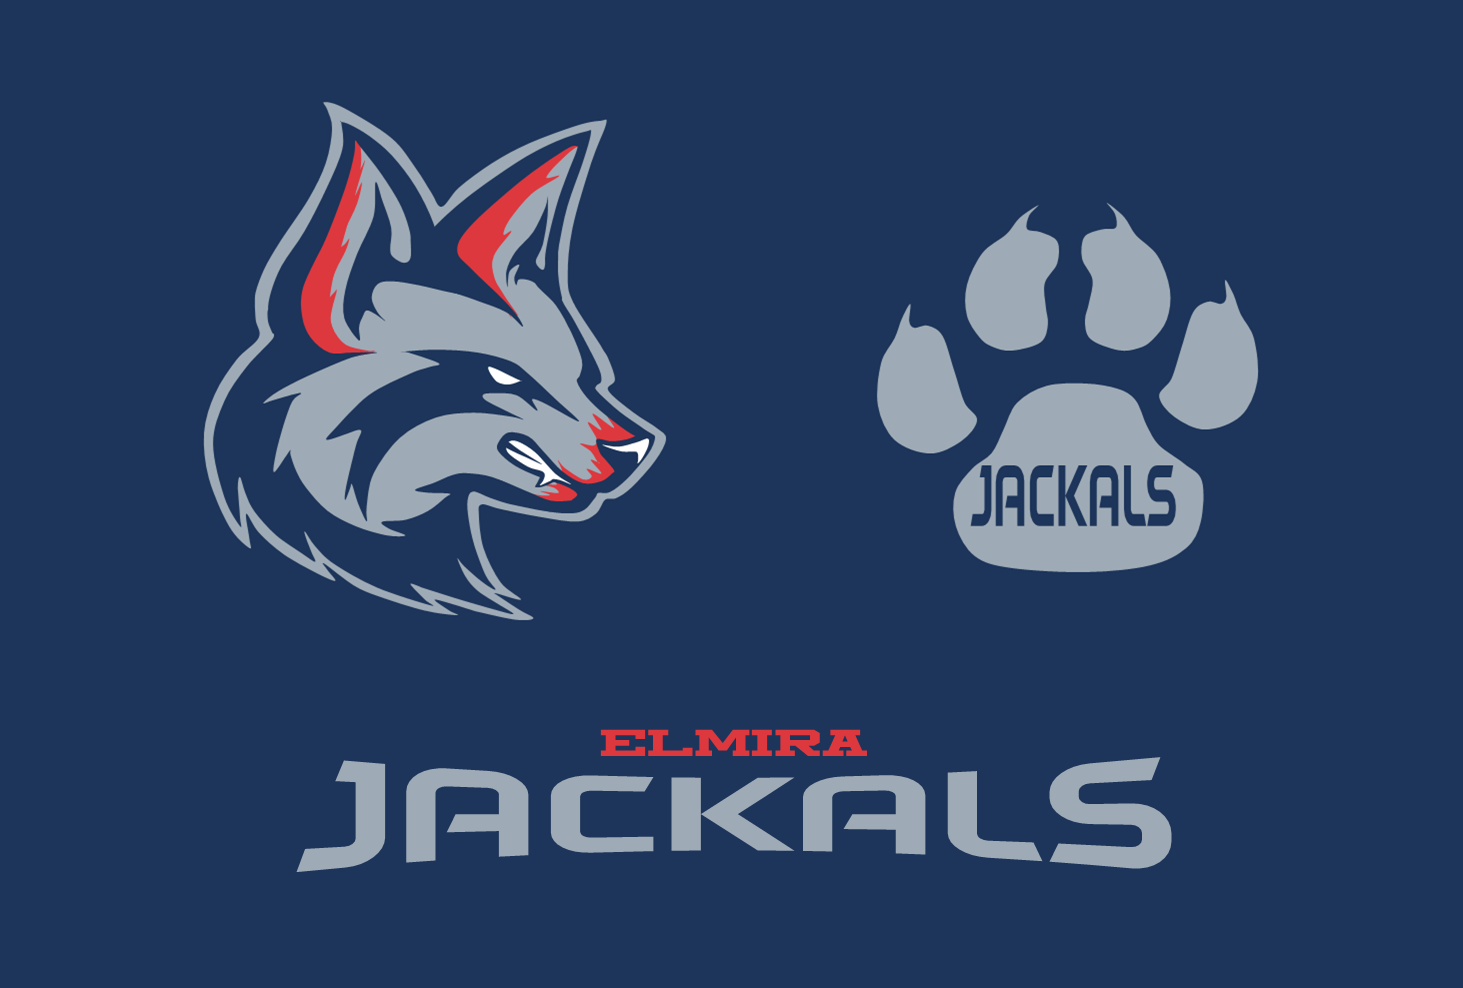 Jackal Logo - Elmira Jackals logo concept - Concepts - Chris Creamer's Sports ...